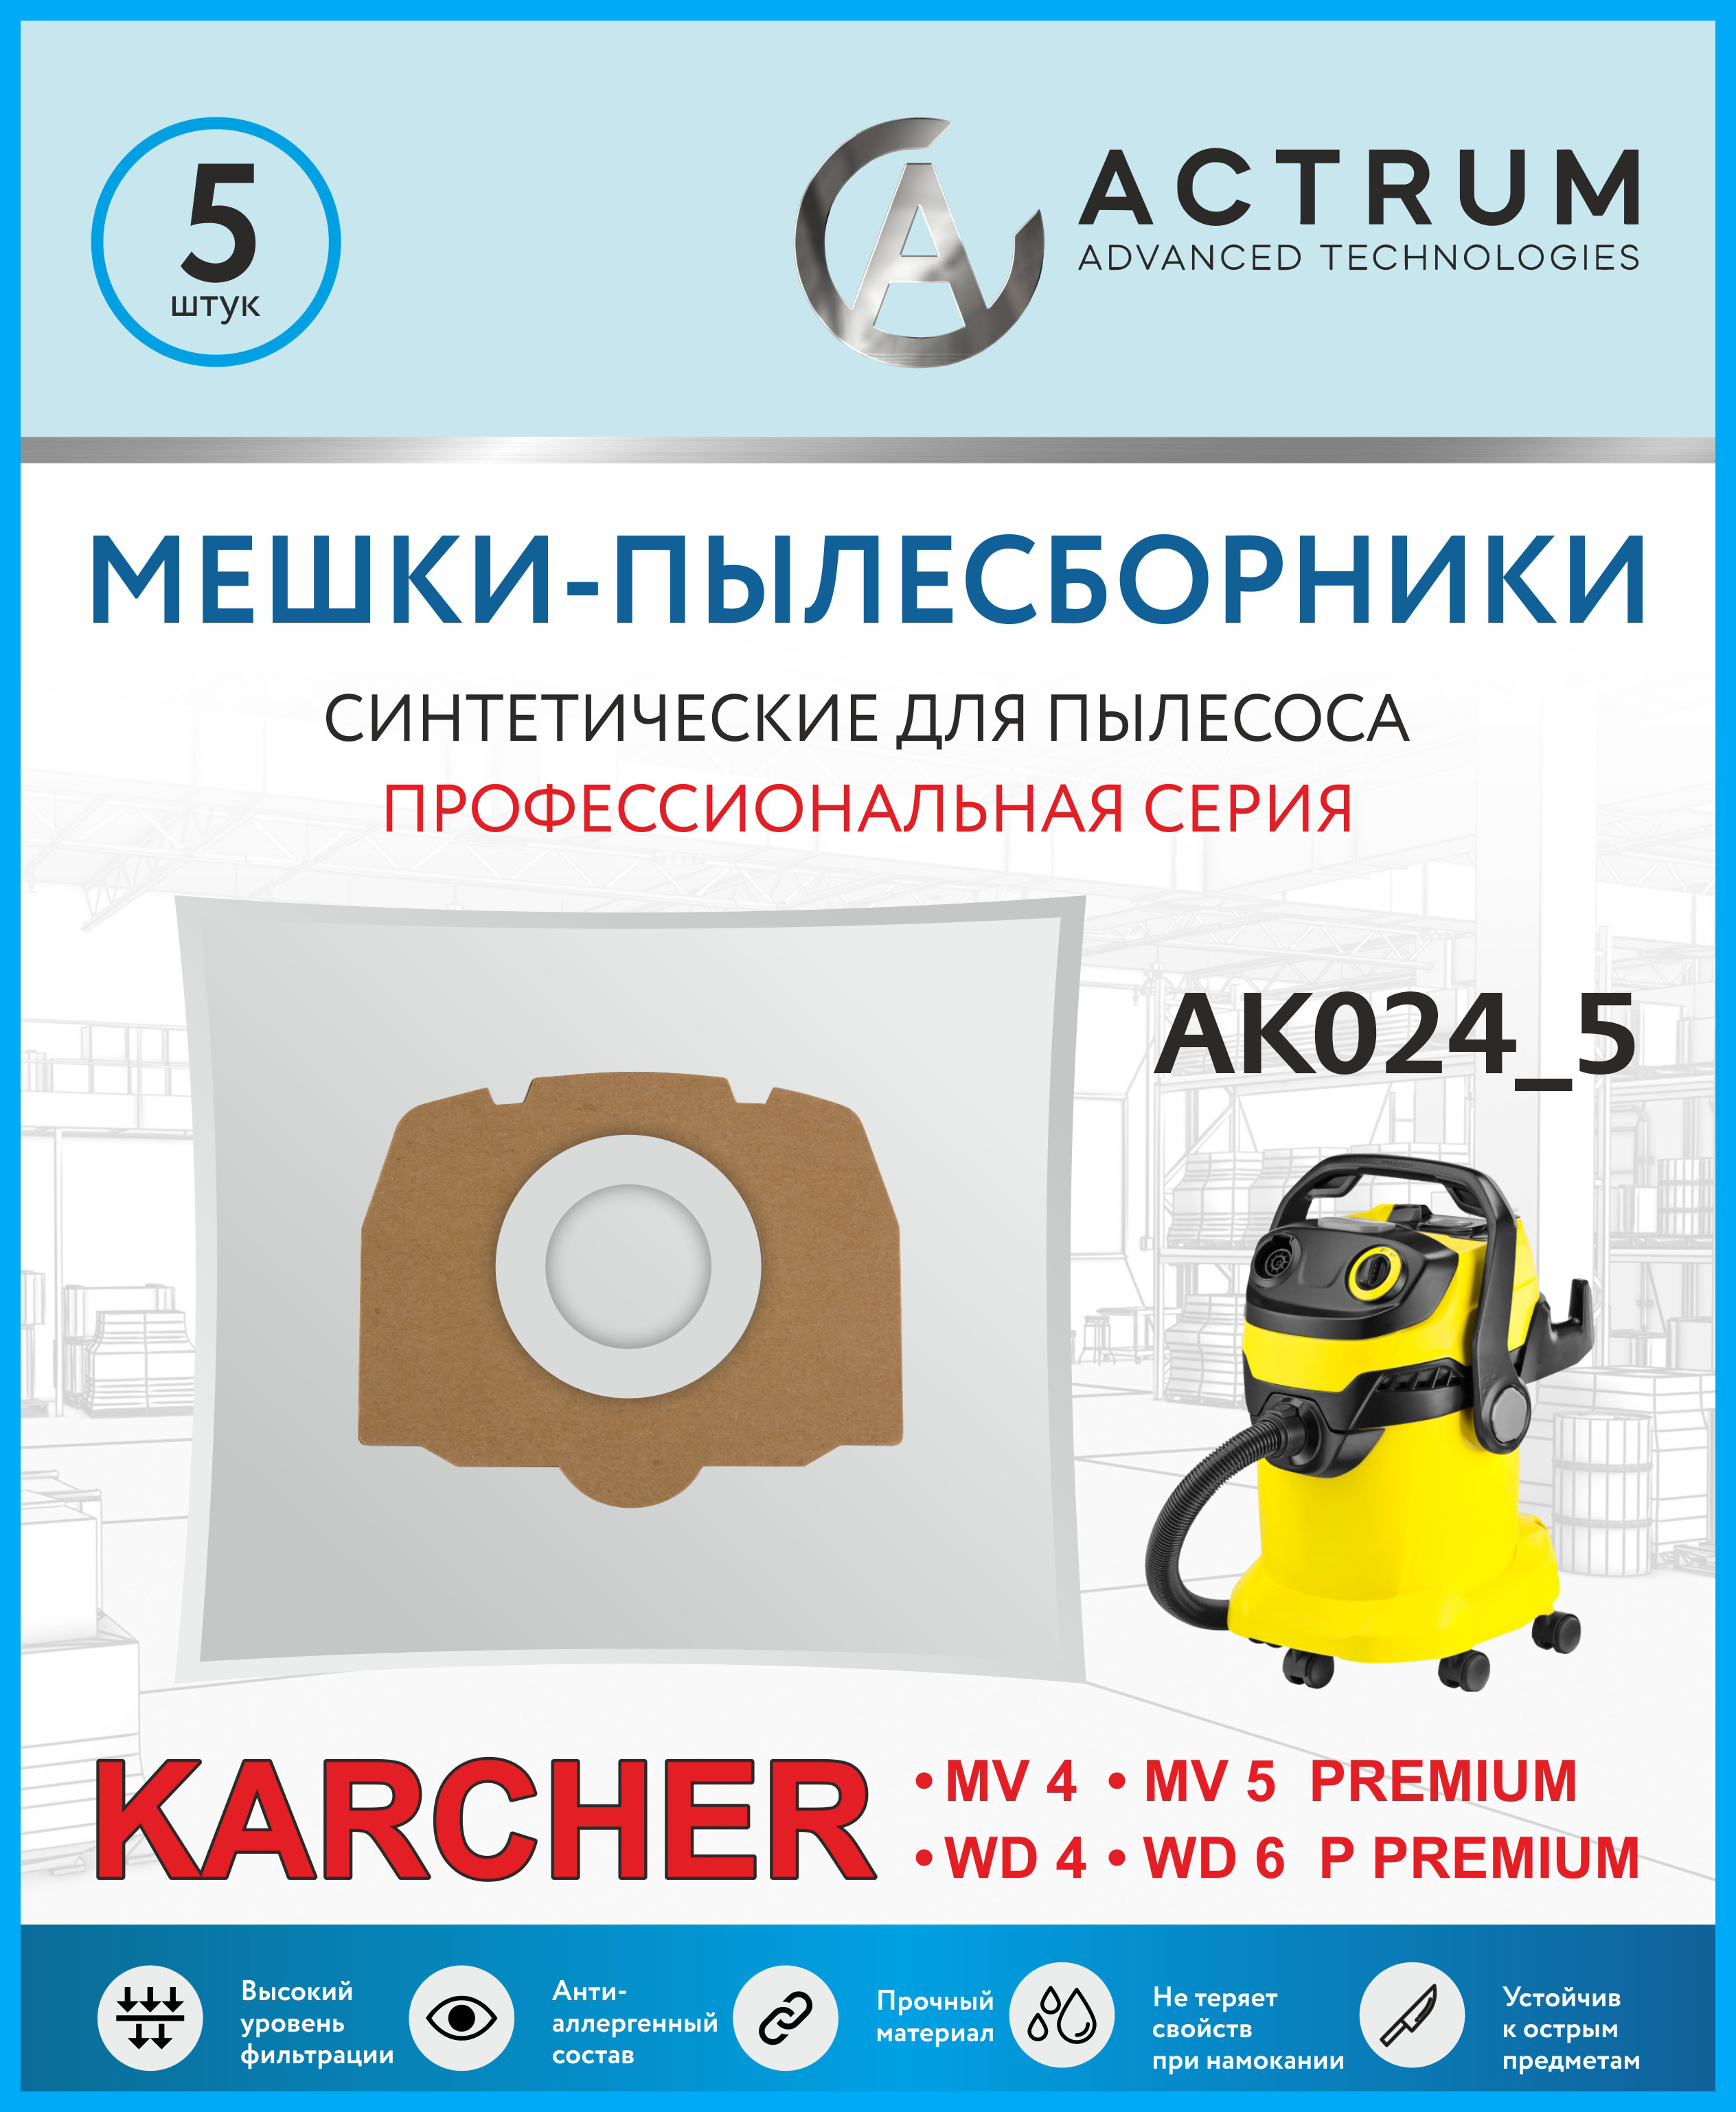 пылесборники actrum ак032 Пылесборники Actrum AK024_5 для промышленных пылесосов KARCHER MV 4, MV 5, WD 4, WD 5